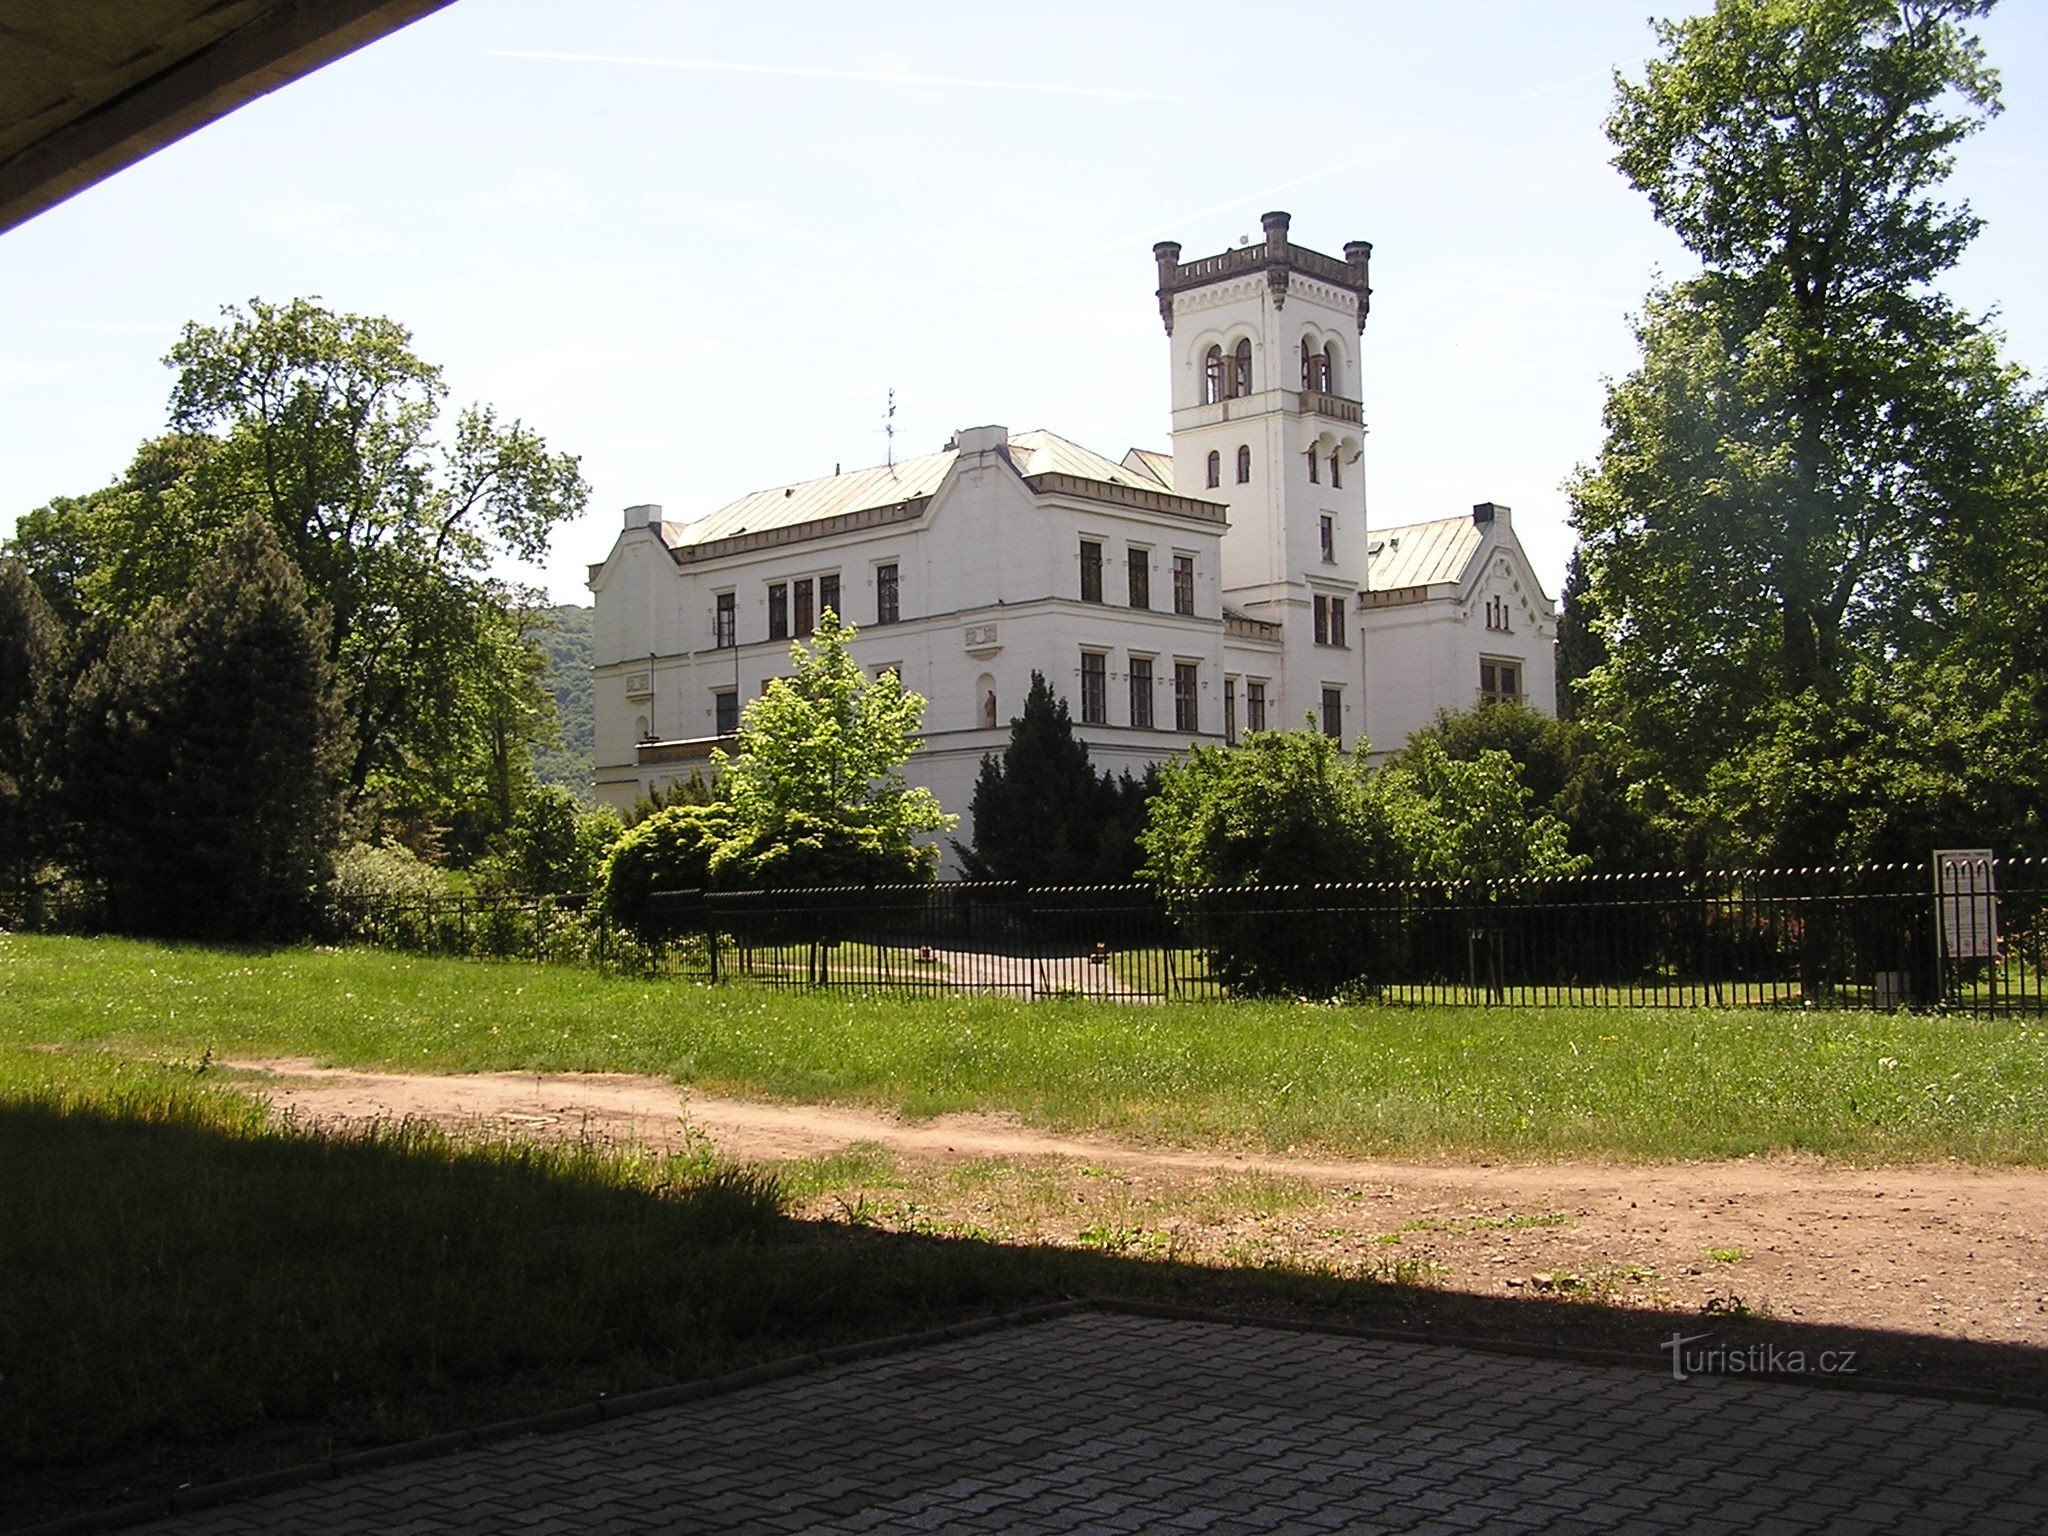 Château de Trmice (22.5.2016 mai XNUMX)